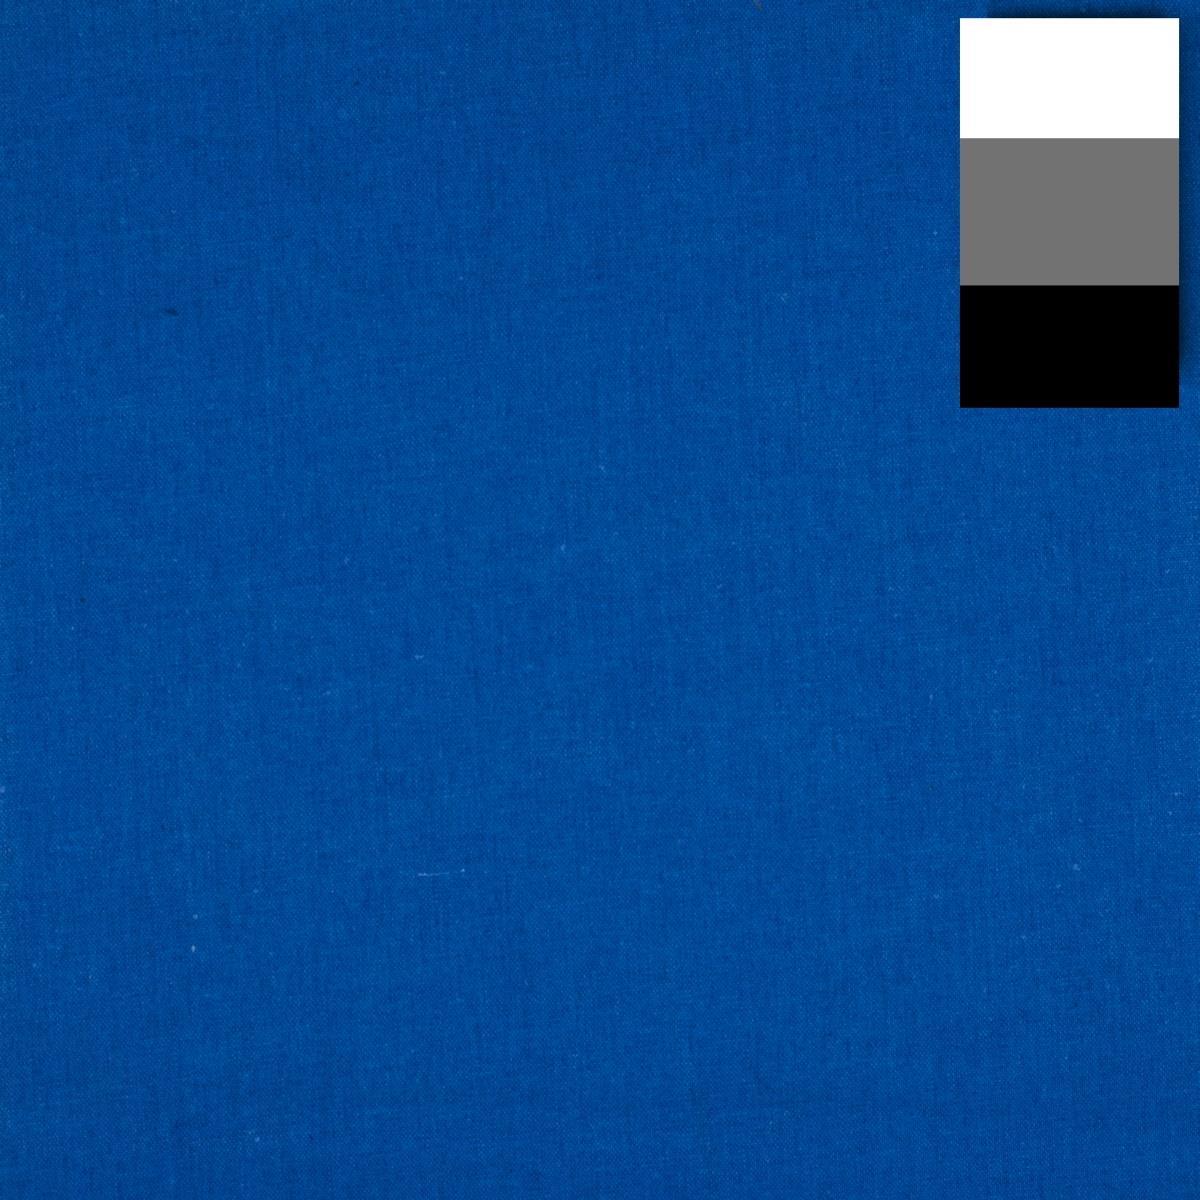 WALSER Walimex Stoffhintergrund 2,85x6m, blau 19494 (19494)